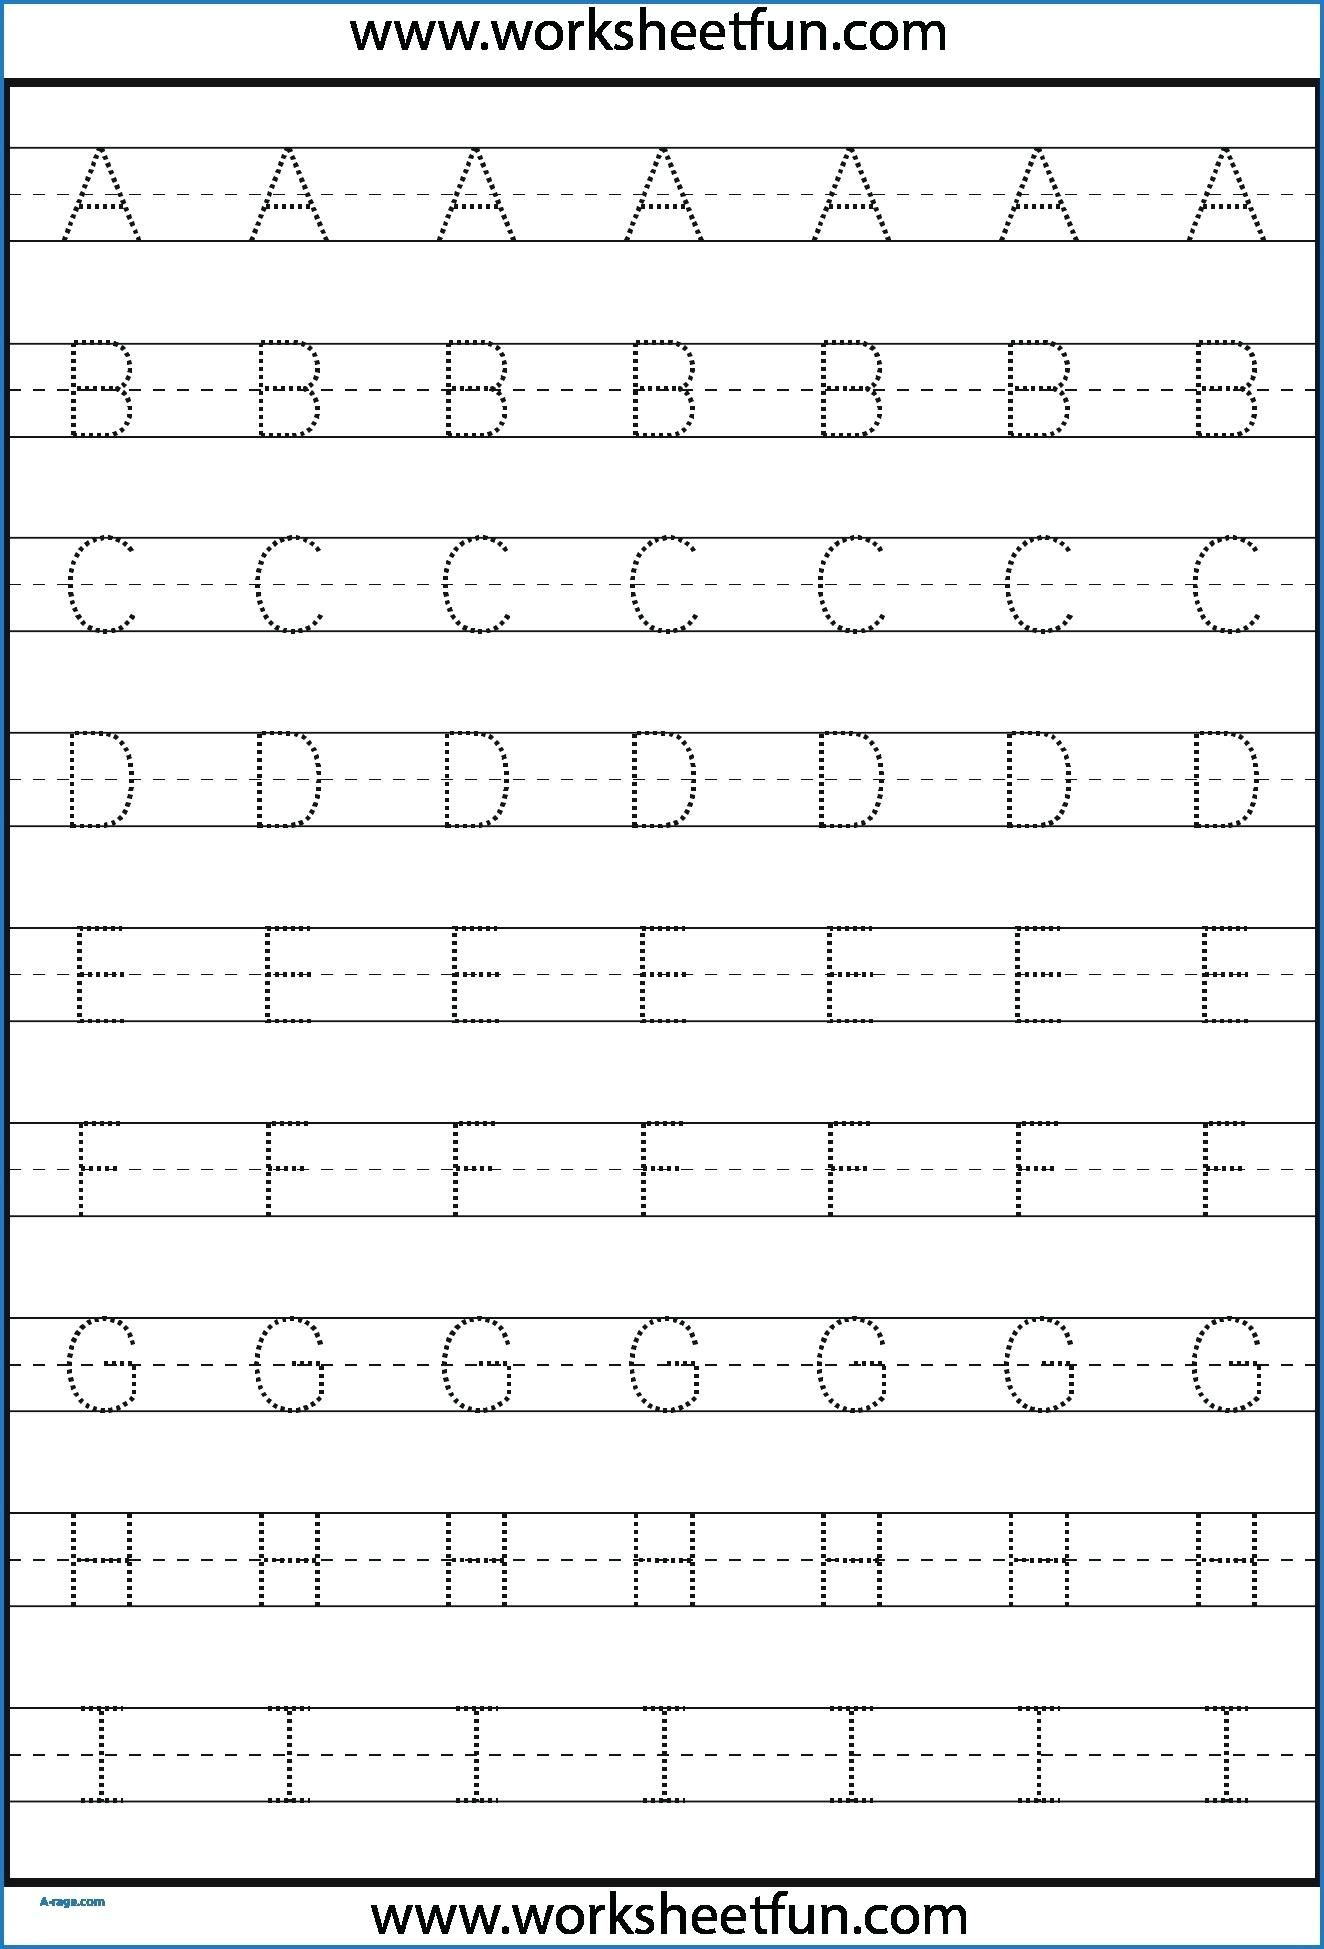 Kindergarten Letter Tracing Worksheets Pdf - Wallpaper Image regarding Tracing Letter Worksheets Preschool Free